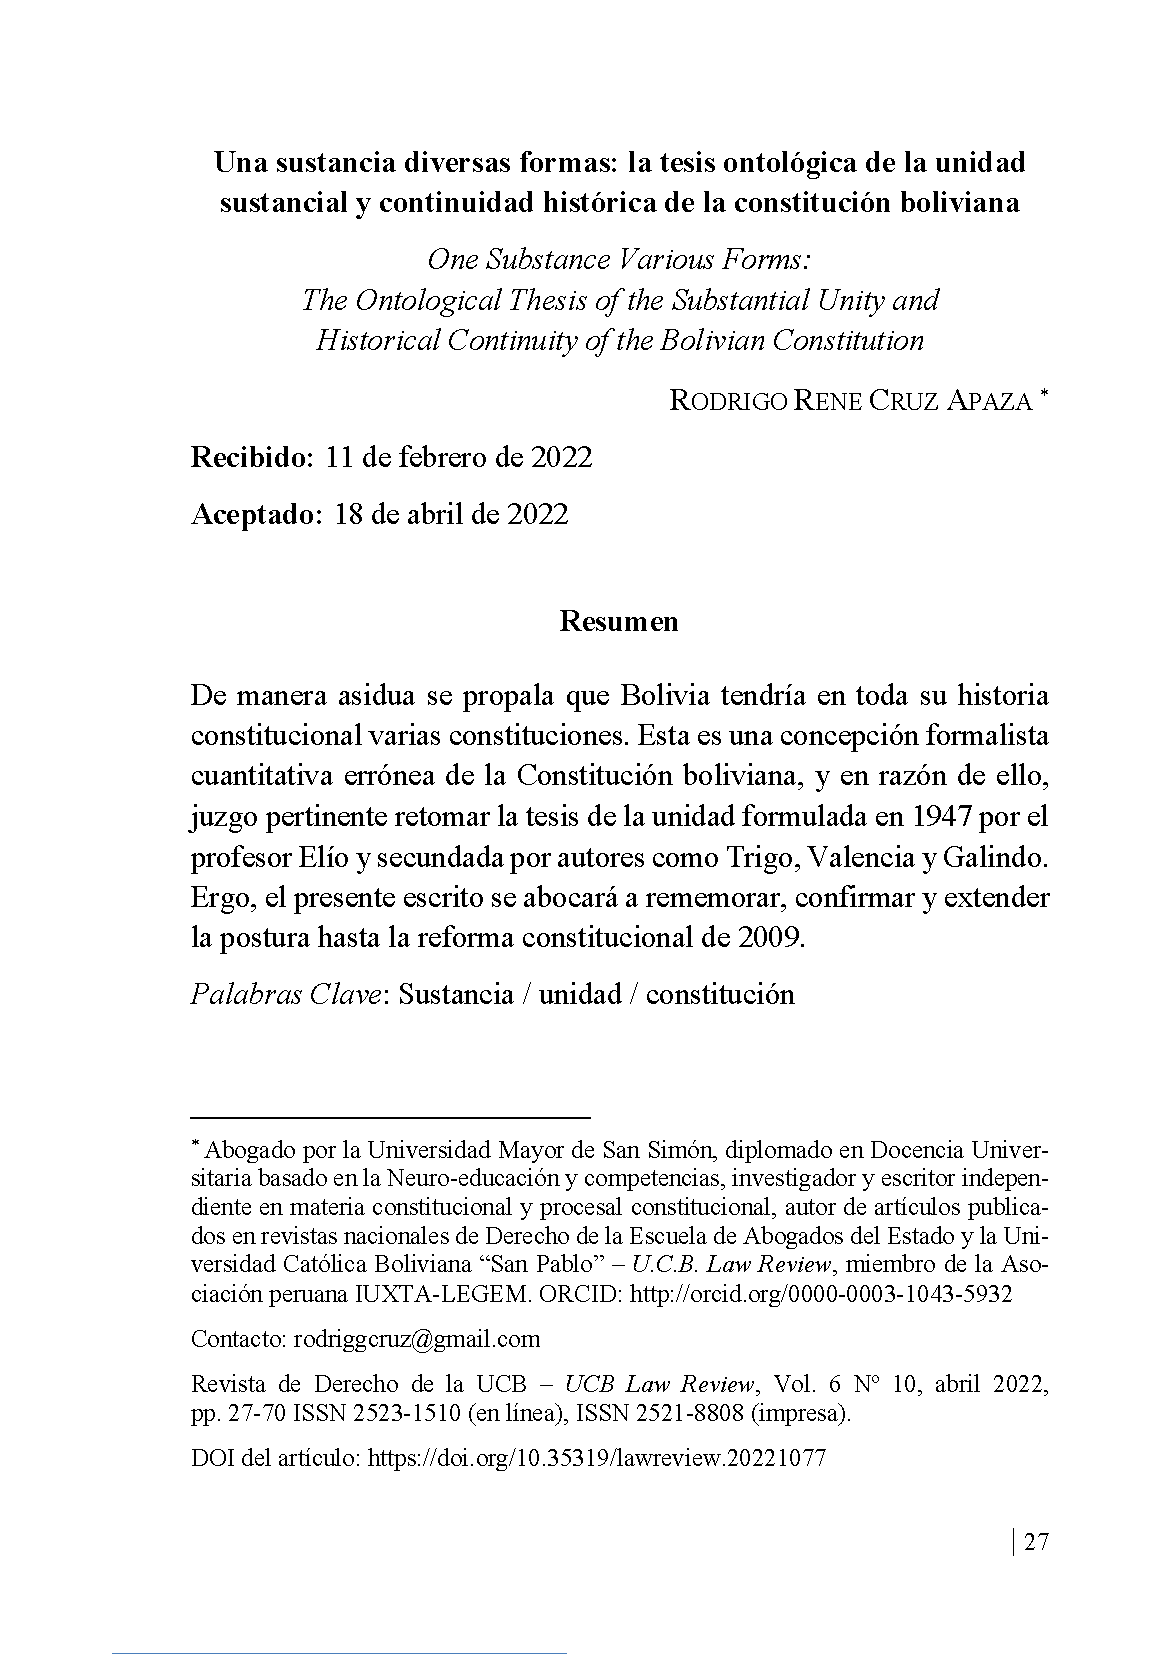 Una sustancia diversas formas: la tesis ontológica de la unidad sustancial y continuidad histórica de la constitución boliviana